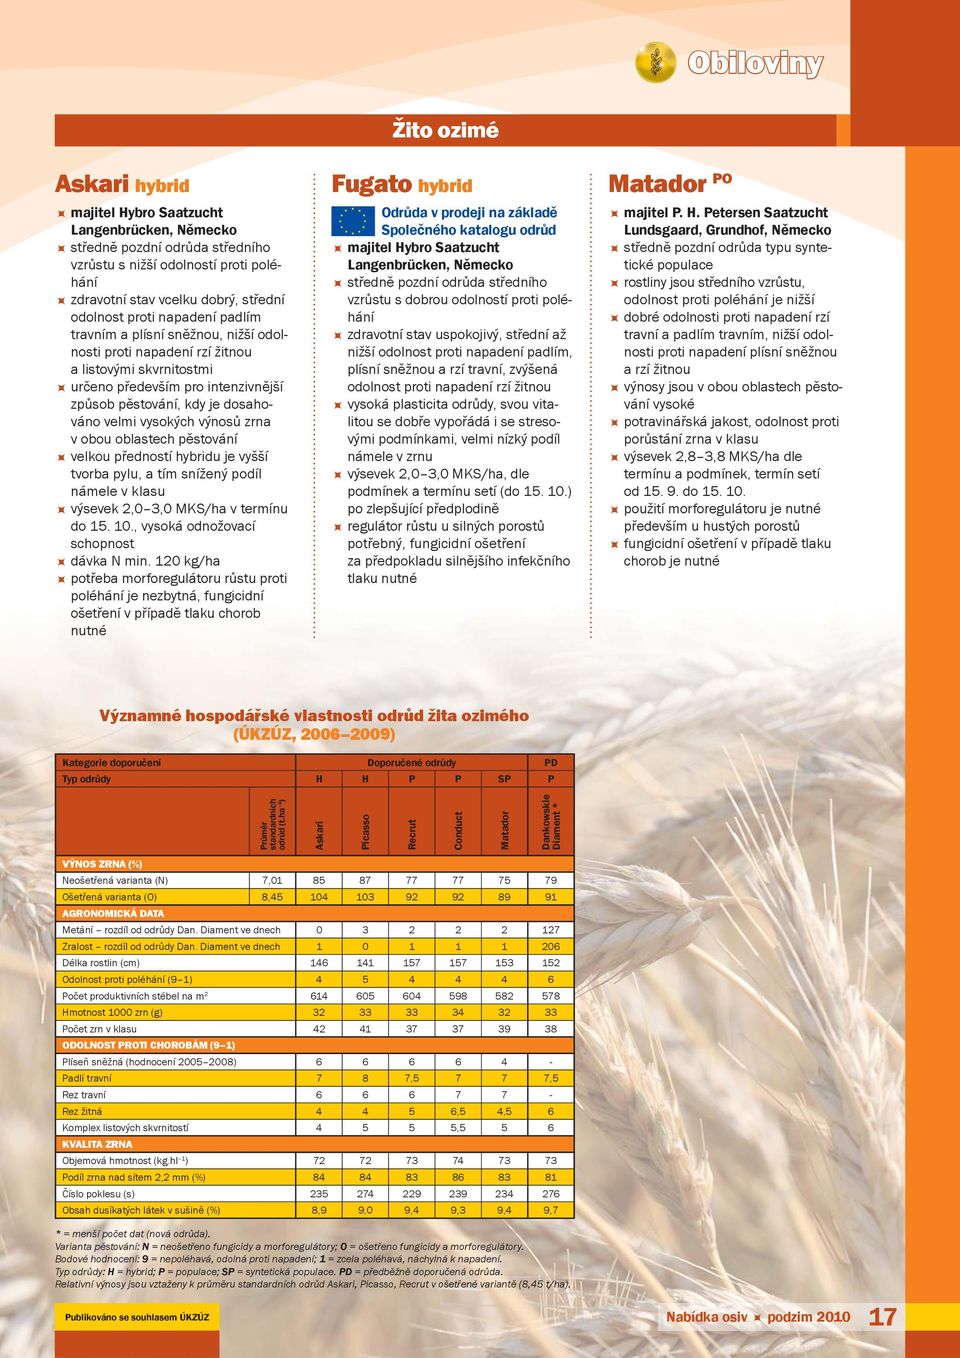 velmi vysokých výnosů zrna v obou oblastech pěstování velkou předností hybridu je vyšší tvorba pylu, a tím snížený podíl námele v klasu výsevek 2,0 3,0 MKS/ha v termínu do 15. 10.